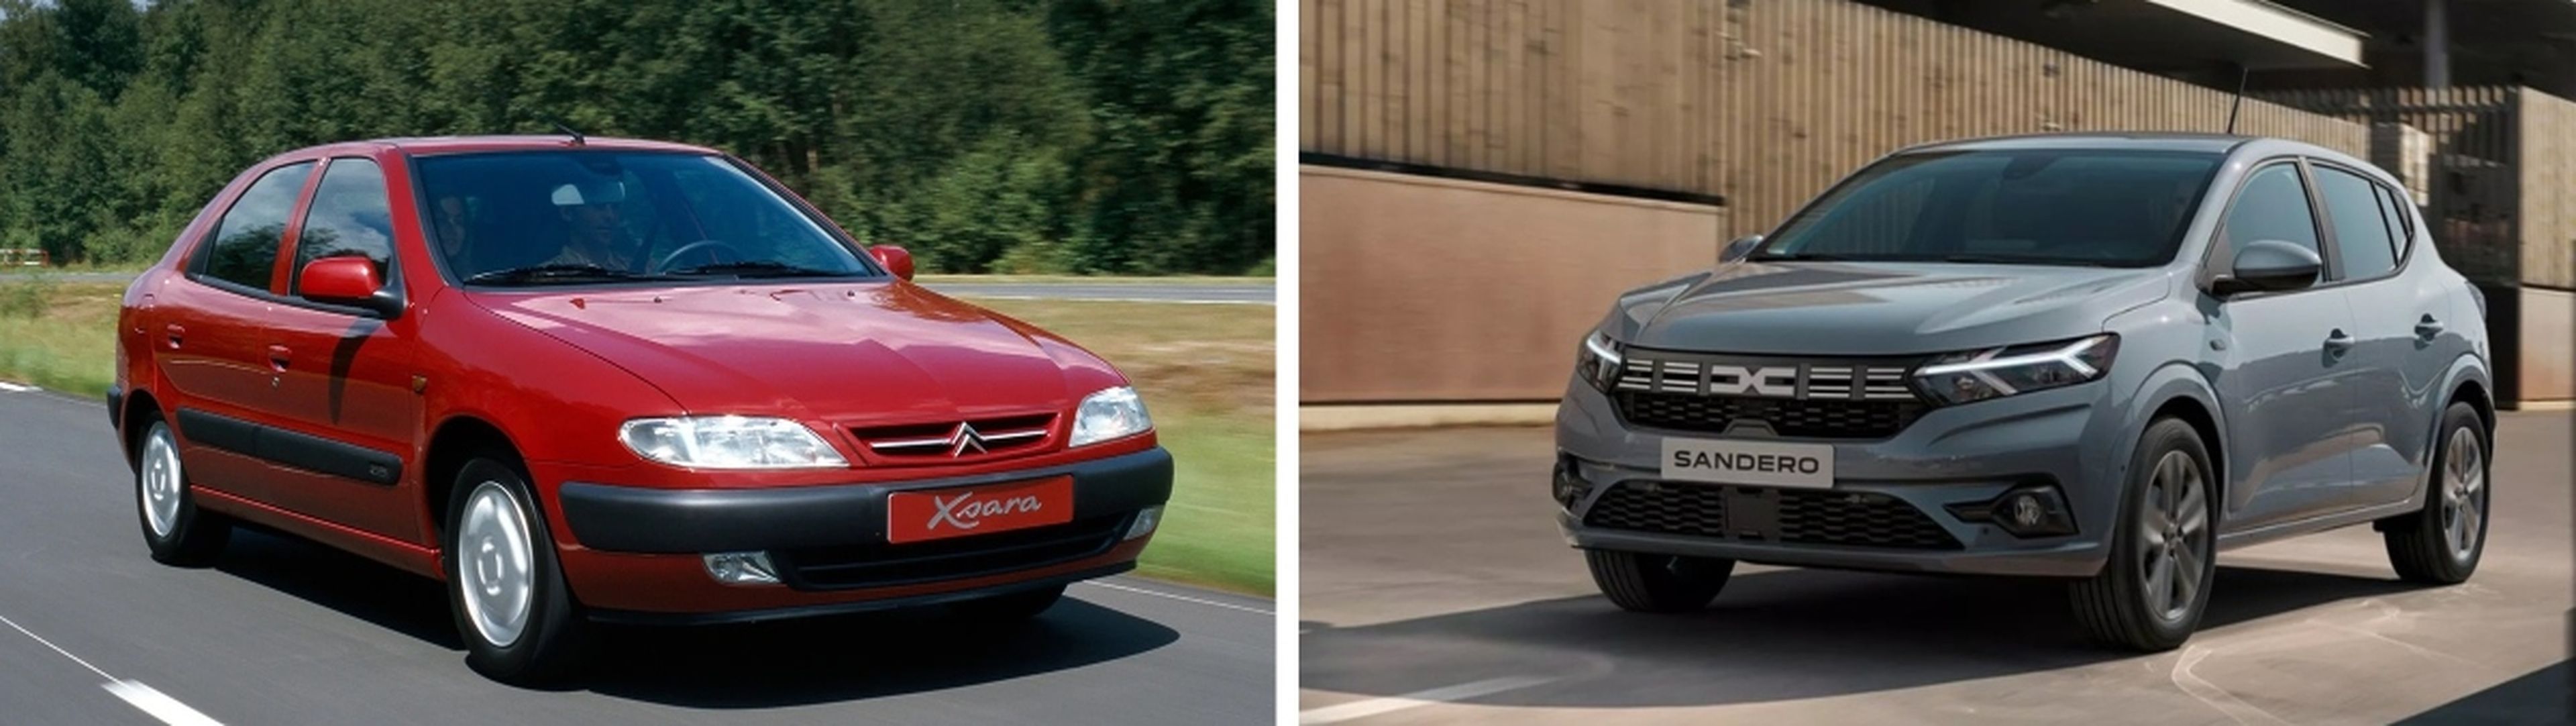 Una comparación entre un Citroën Xsara (izquierda) y un Dacia Sandero (derecha).